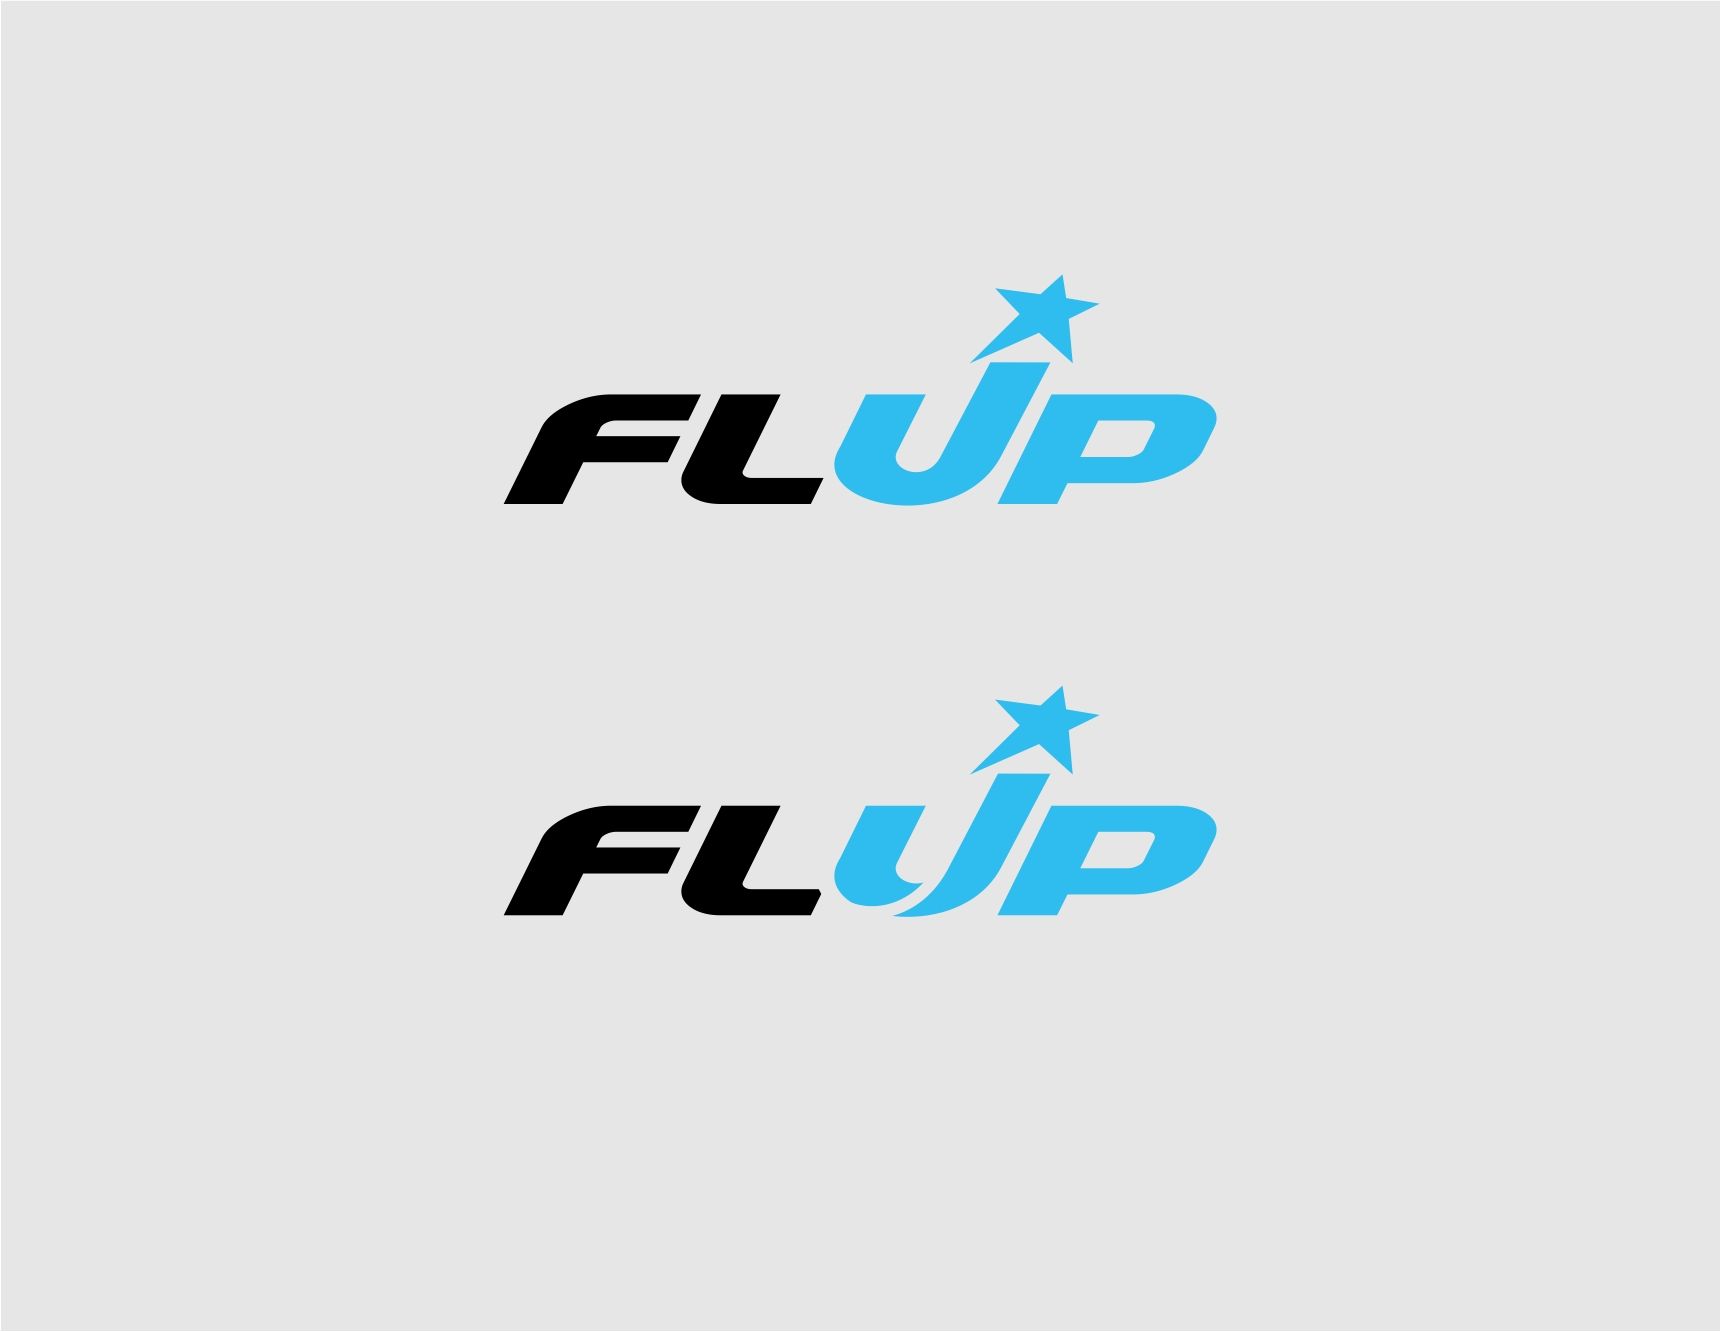 Логотип для IT компании и сайта - дизайнер kras-sky